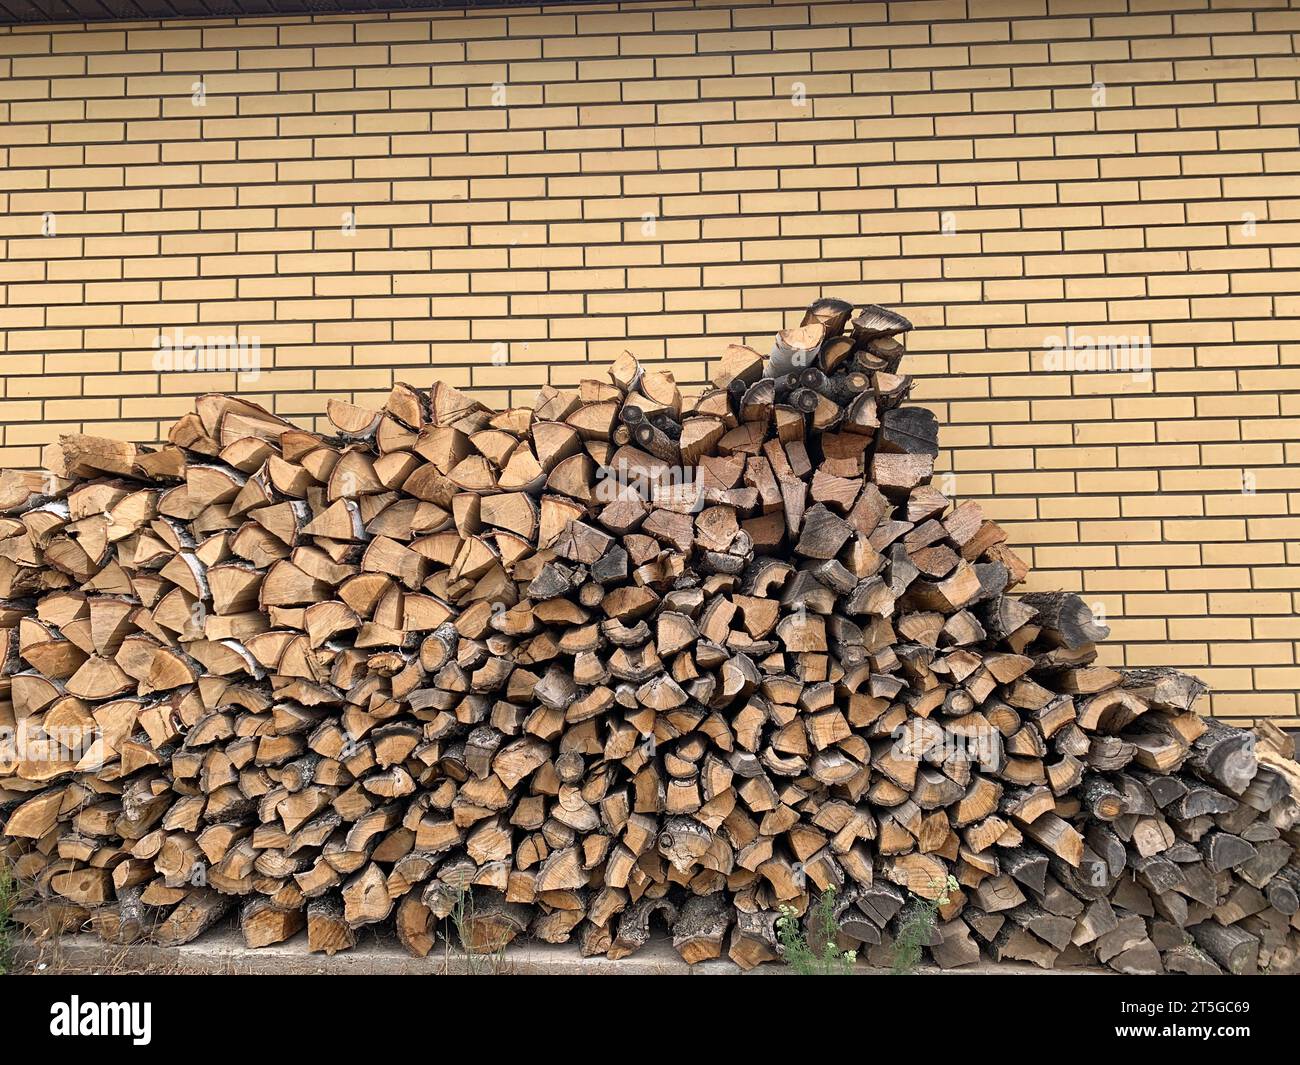 Grande pile d'un bois de chauffage. Près de la maison de brique Banque D'Images